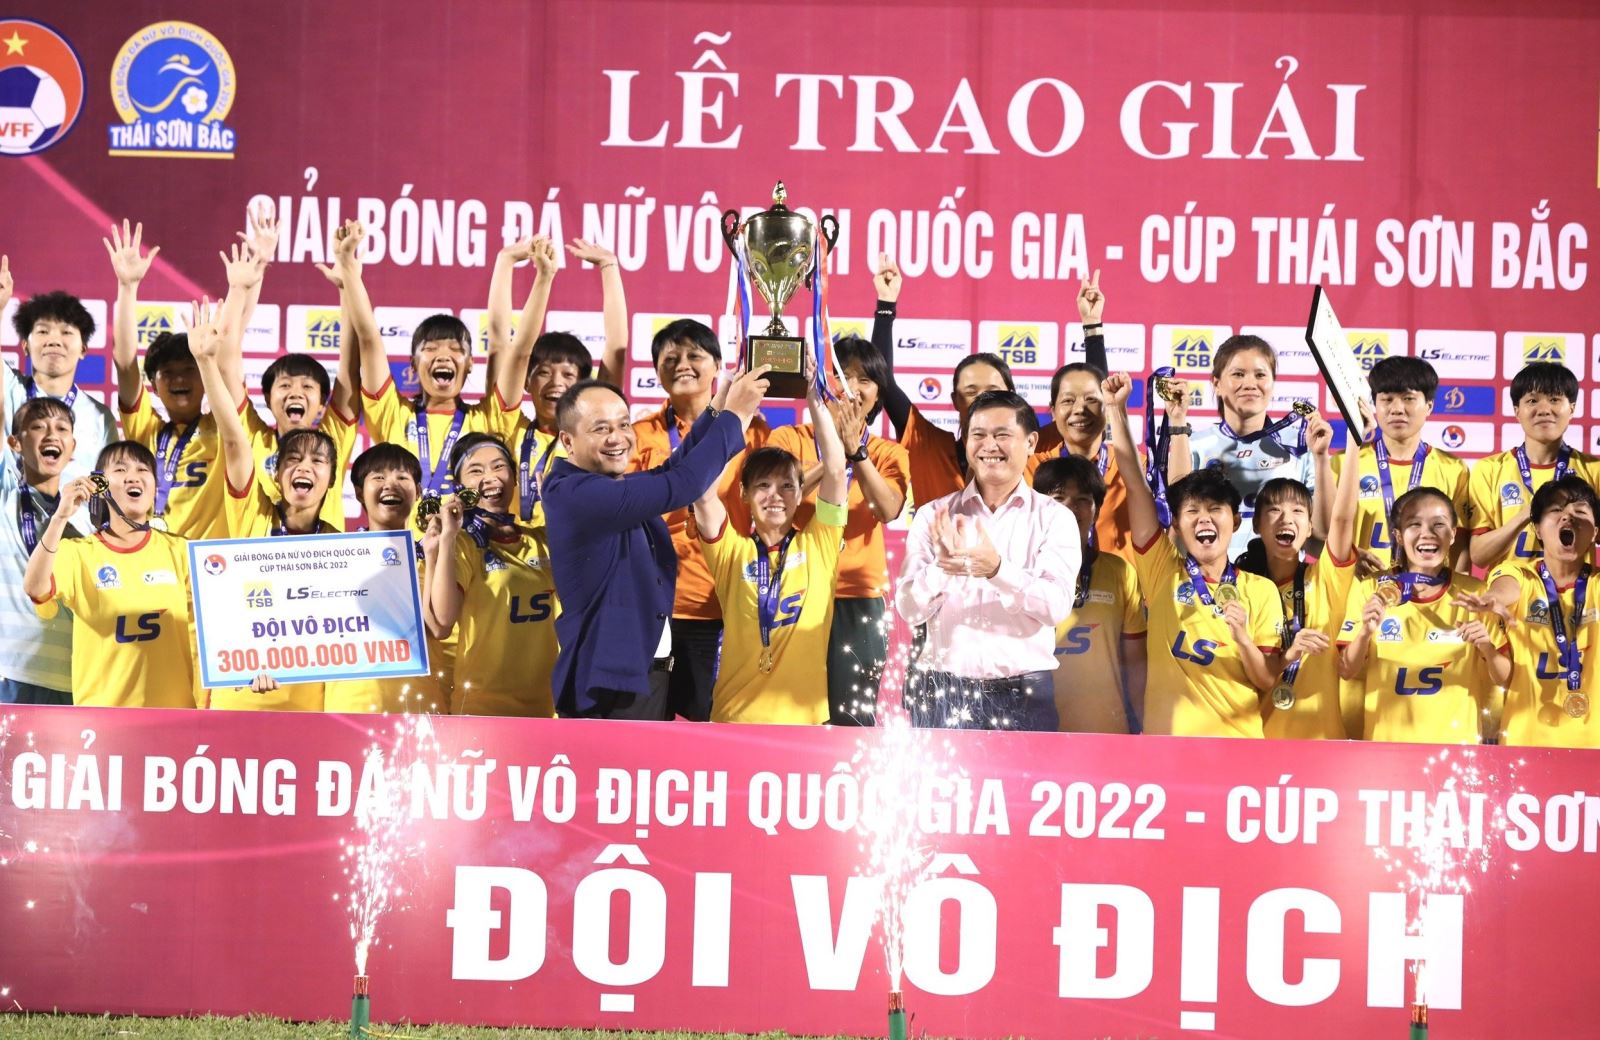 Đội tuyển bóng đá nữ Viêt Nam đã mang vinh quang về cho nước nhà. Ảnh: BTC